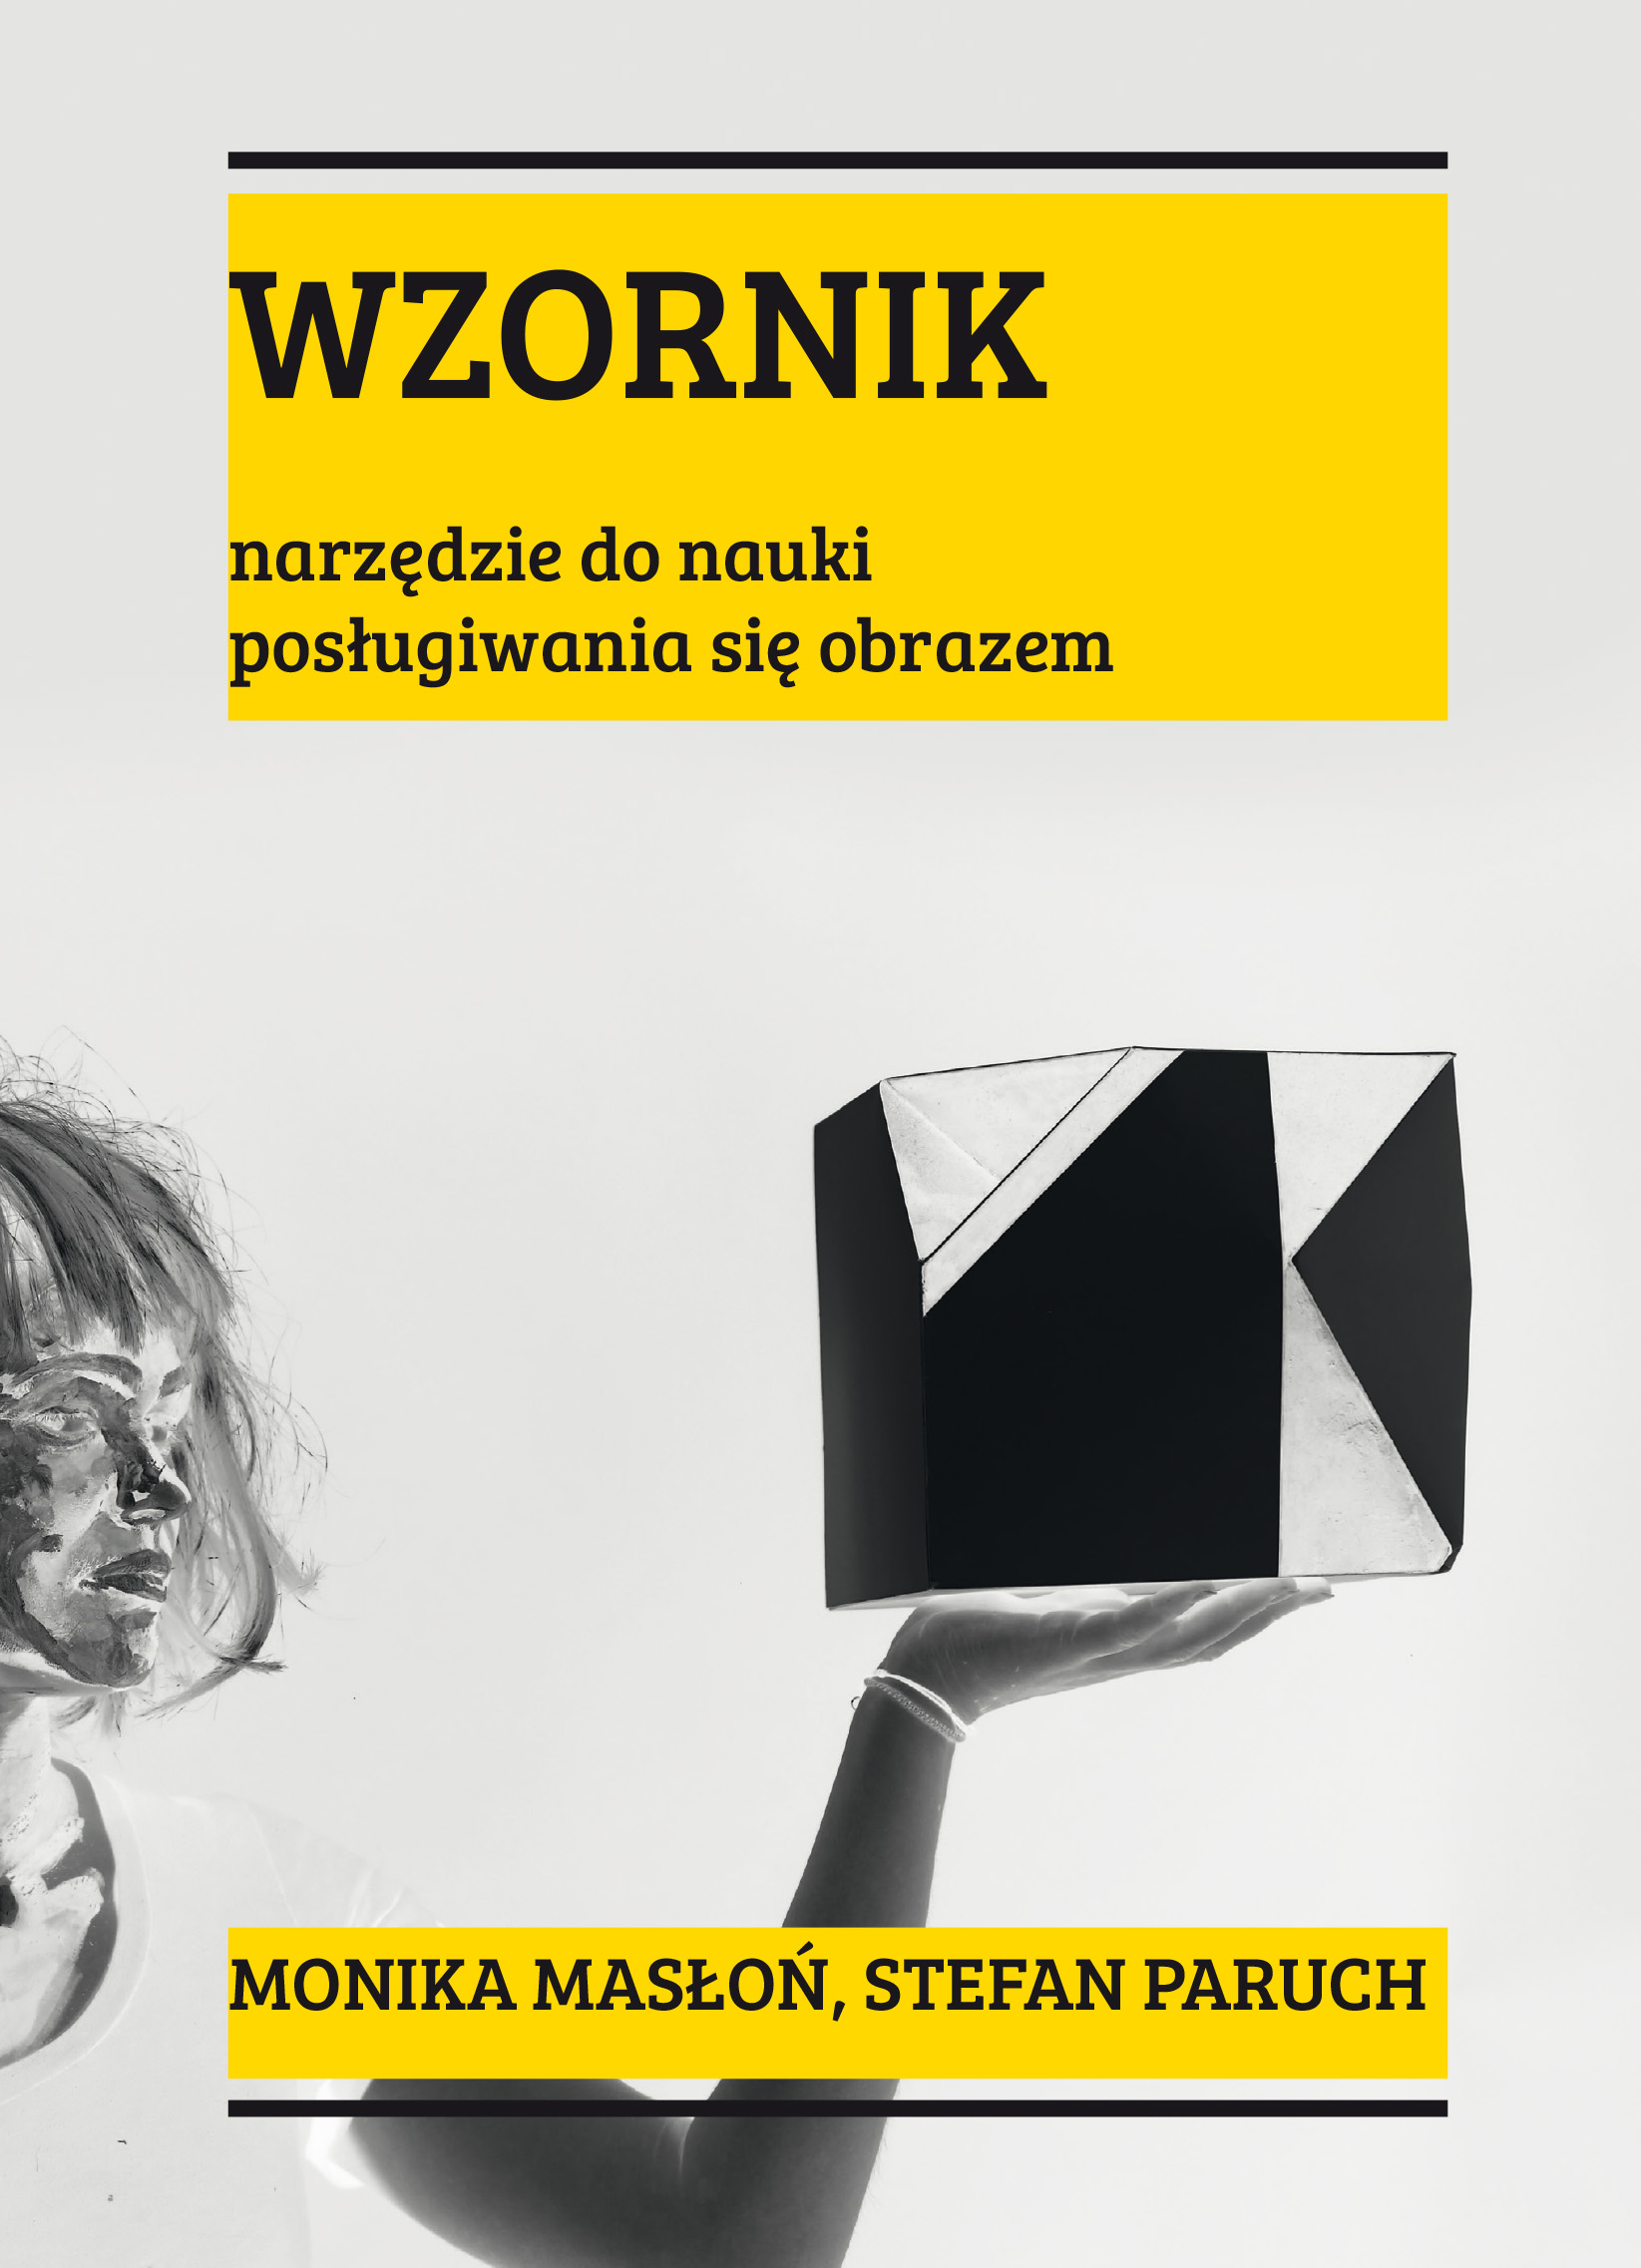 Okładka publikacji Wzornik narzędzie do nauki posługiwania sie obrazem.